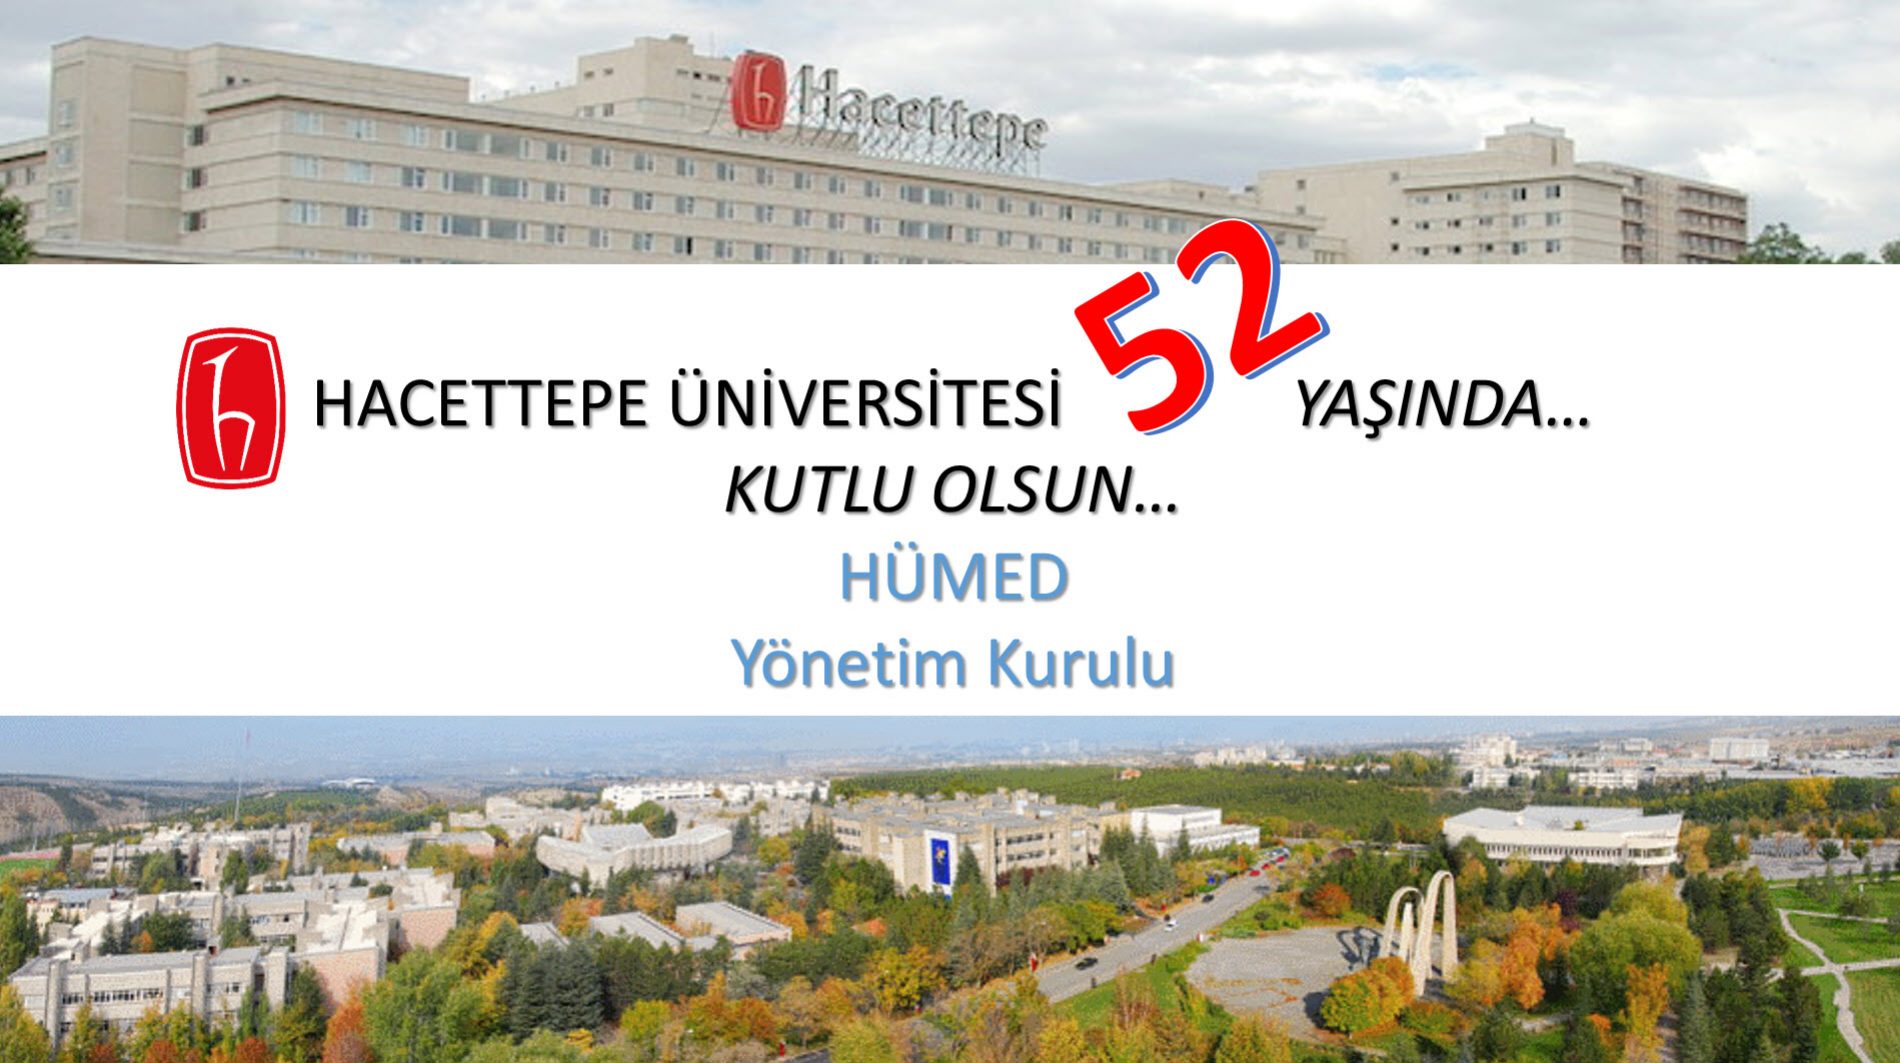 Hacettepe Üniversitesi’nin 52. Yaşı, 8 TEMMUZ HACETTEPELİLER GÜNÜ, Kutlu Olsun